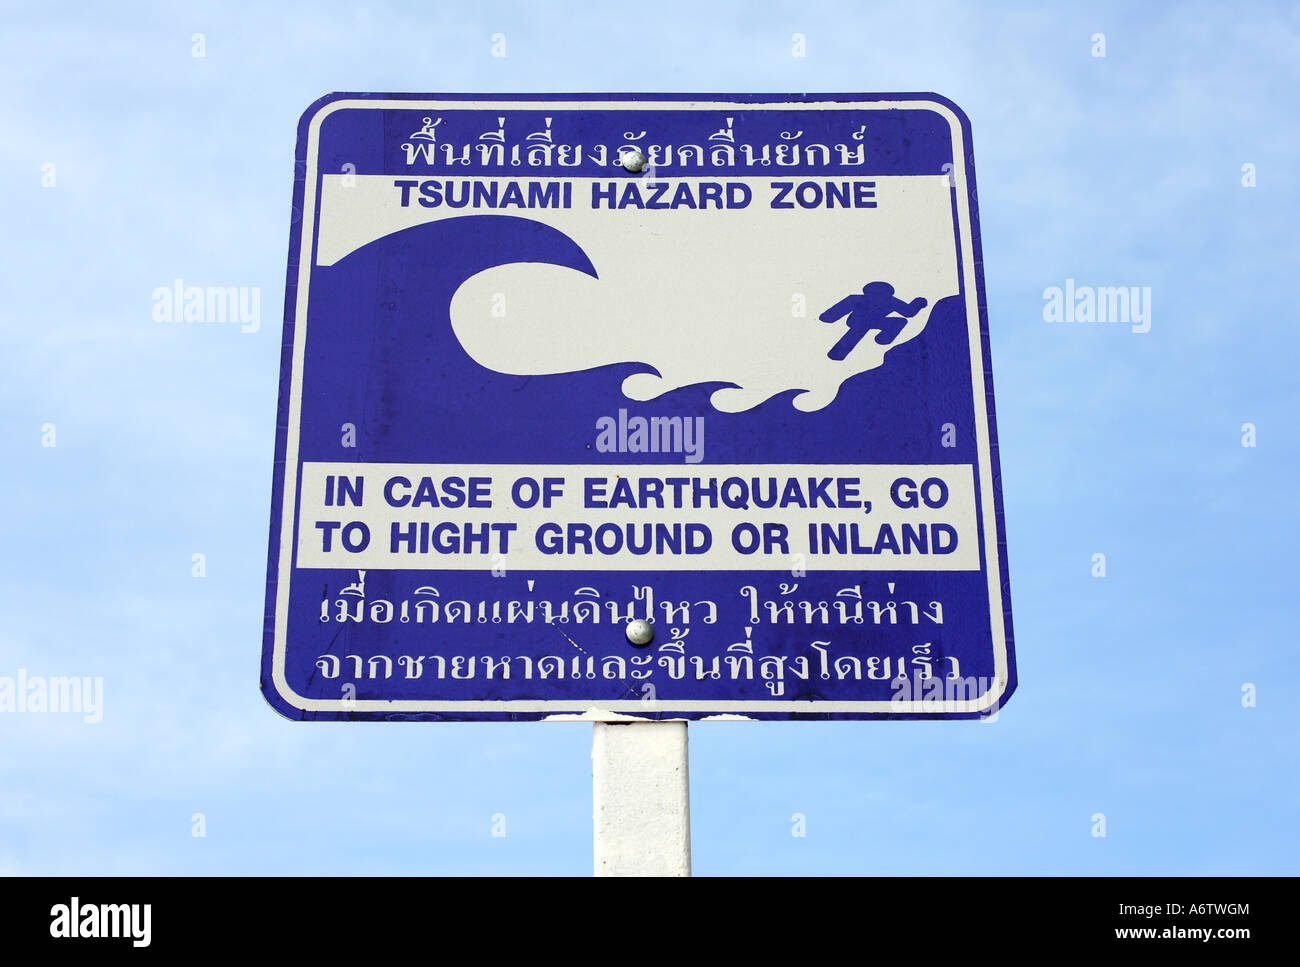 Tsunami-Warnschild mit Beratung im Süden von Thailand, Asien Stockfoto